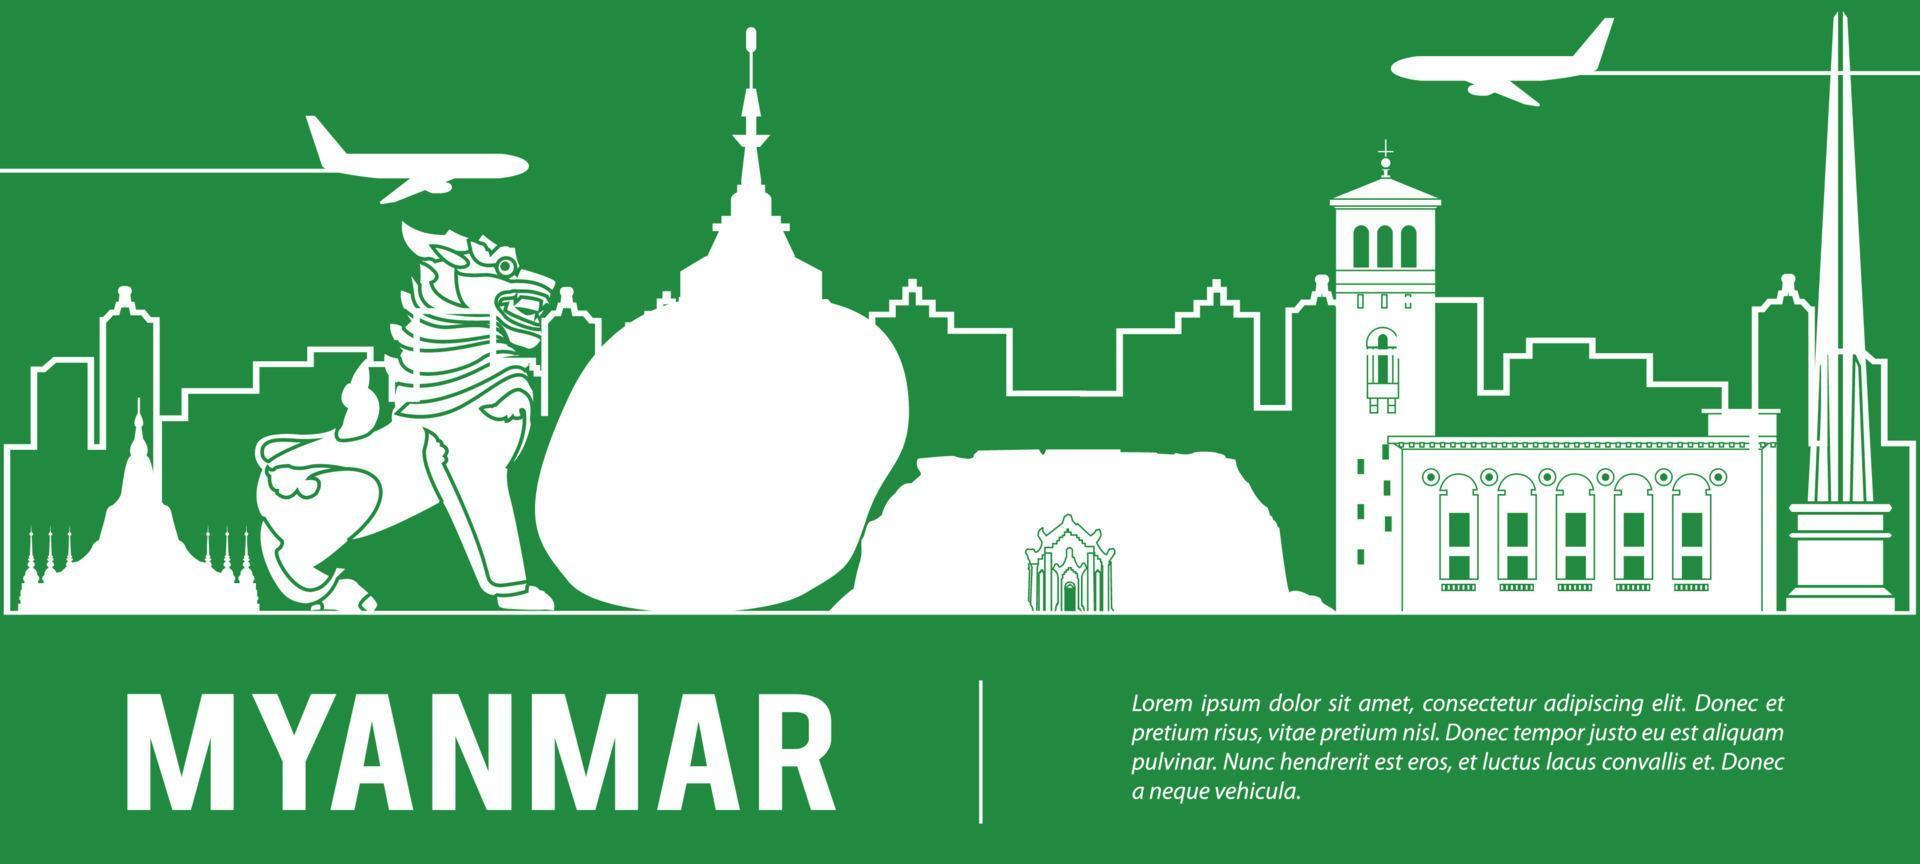 myanmar top monuments célèbres style de silhouette, voyages et tourisme vecteur